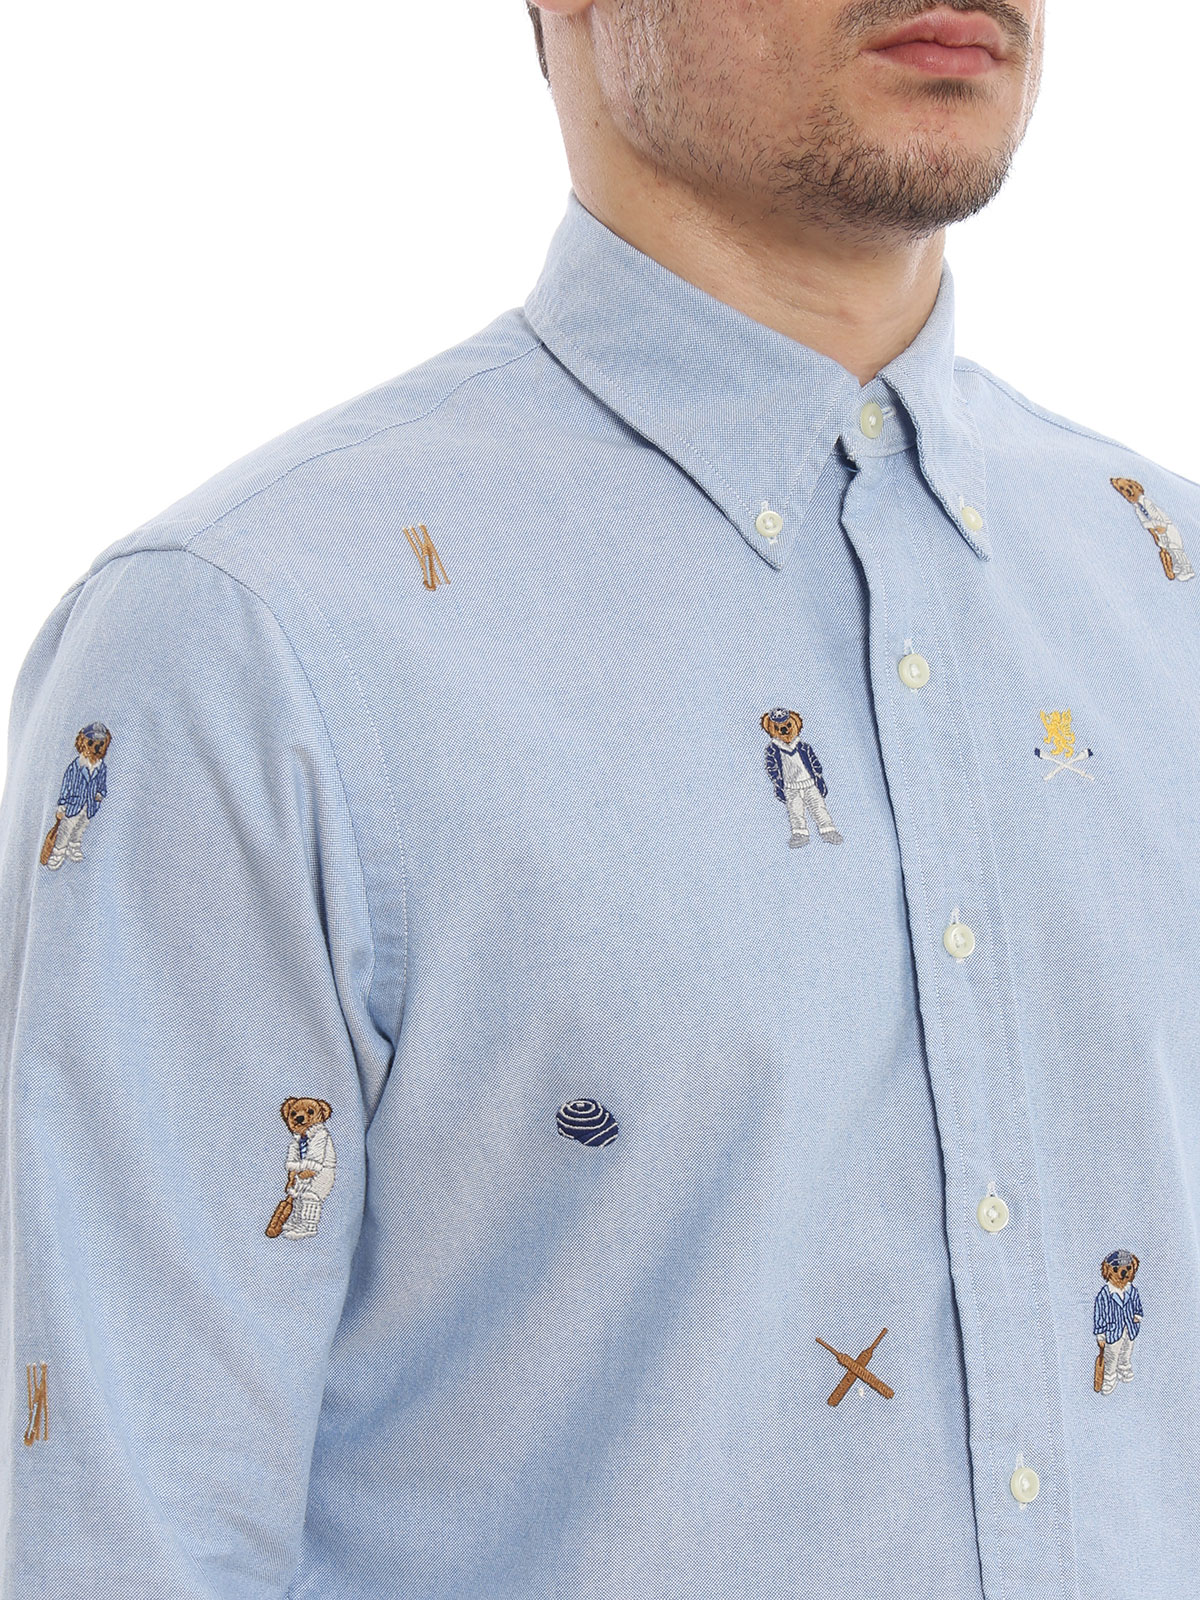 ralph lauren embroidered shirt